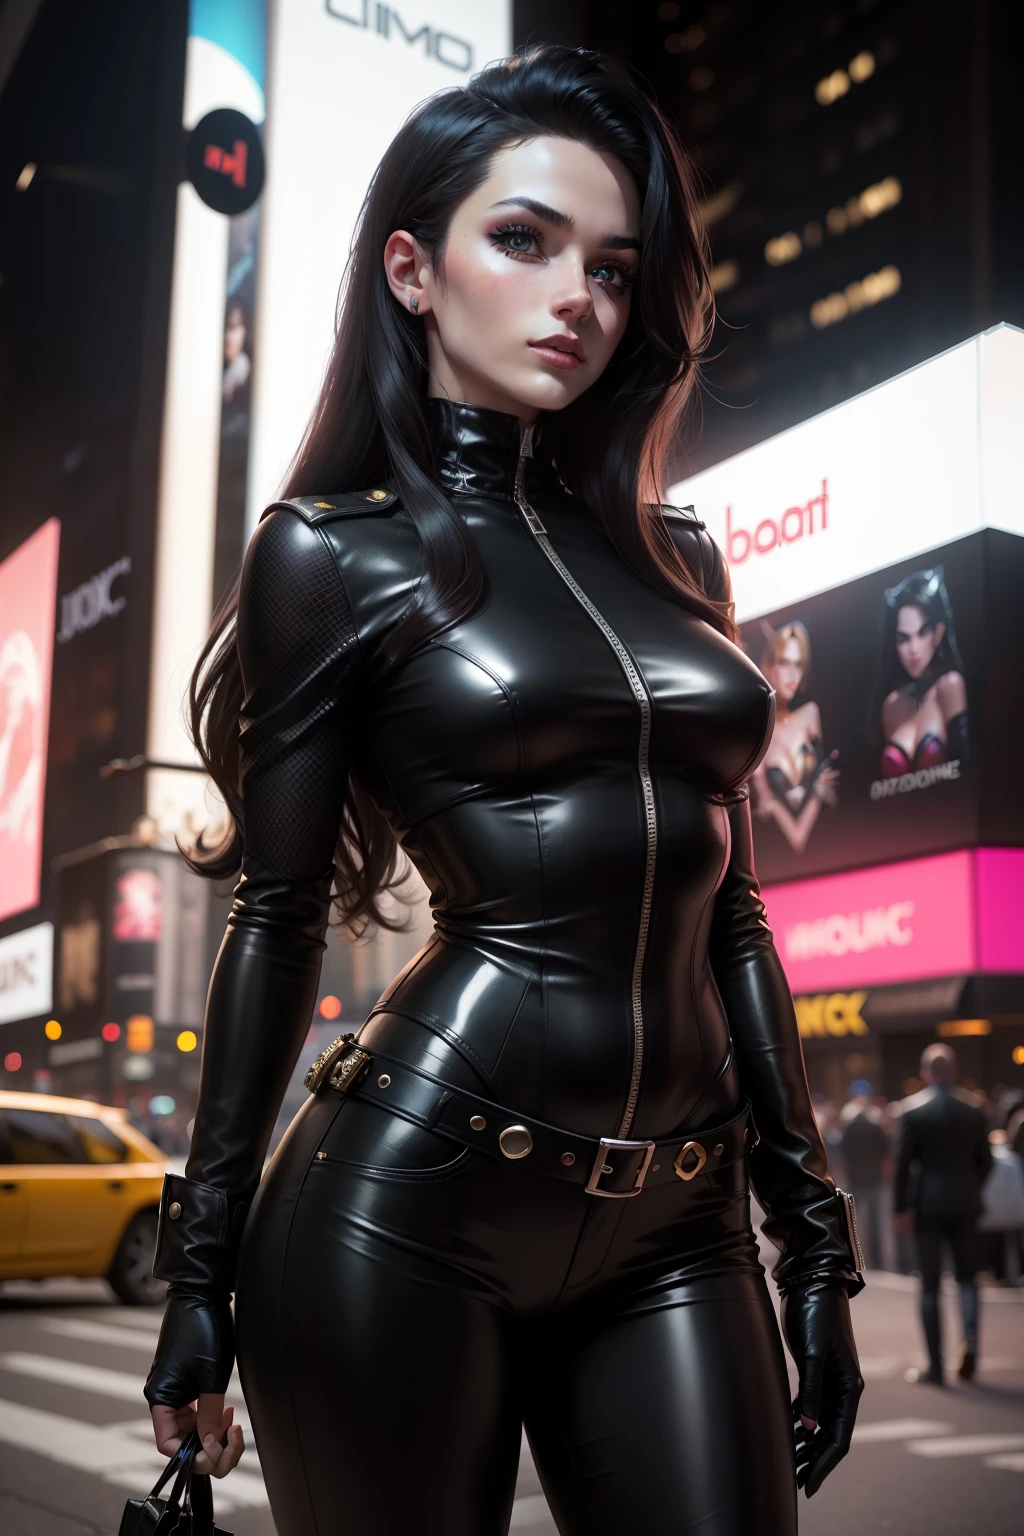 ニューヨーク市, タイムスクエア, キャラクター セリーナ カイル, DCコミックスが発行する漫画に登場する人物, バットマン物語のアンチヒロイン. 彼女の制服は真っ黒だ, 本当に "光沢のある黒のPVC", 白くて長い髪をしている, 美しい若い女性であること. 彼女の名前と外見のテーマは、彼女が "猫", あれは, 泥棒, 特に宝石類. (最高品質: 1.0), (超高解像度: 1.0), 非常に詳細な顔と目, (写実的な: 1.2)